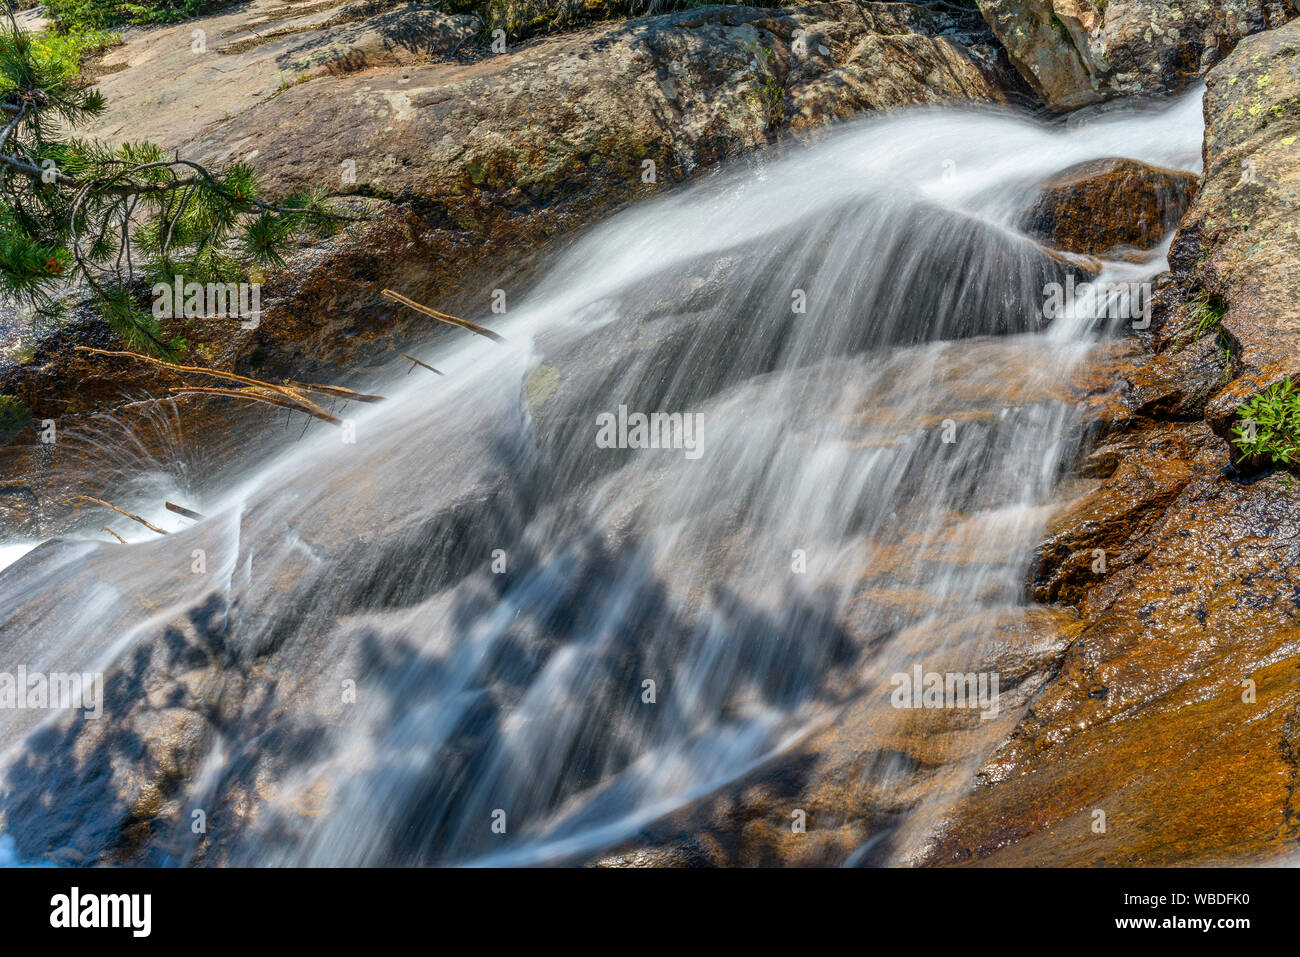 Voile de l'eau - Été creek d'une mince couche d'eau voile sur mountain rock surface. Fall River, Rocky Mountain National Park, CO, États-Unis d'Amérique. Banque D'Images